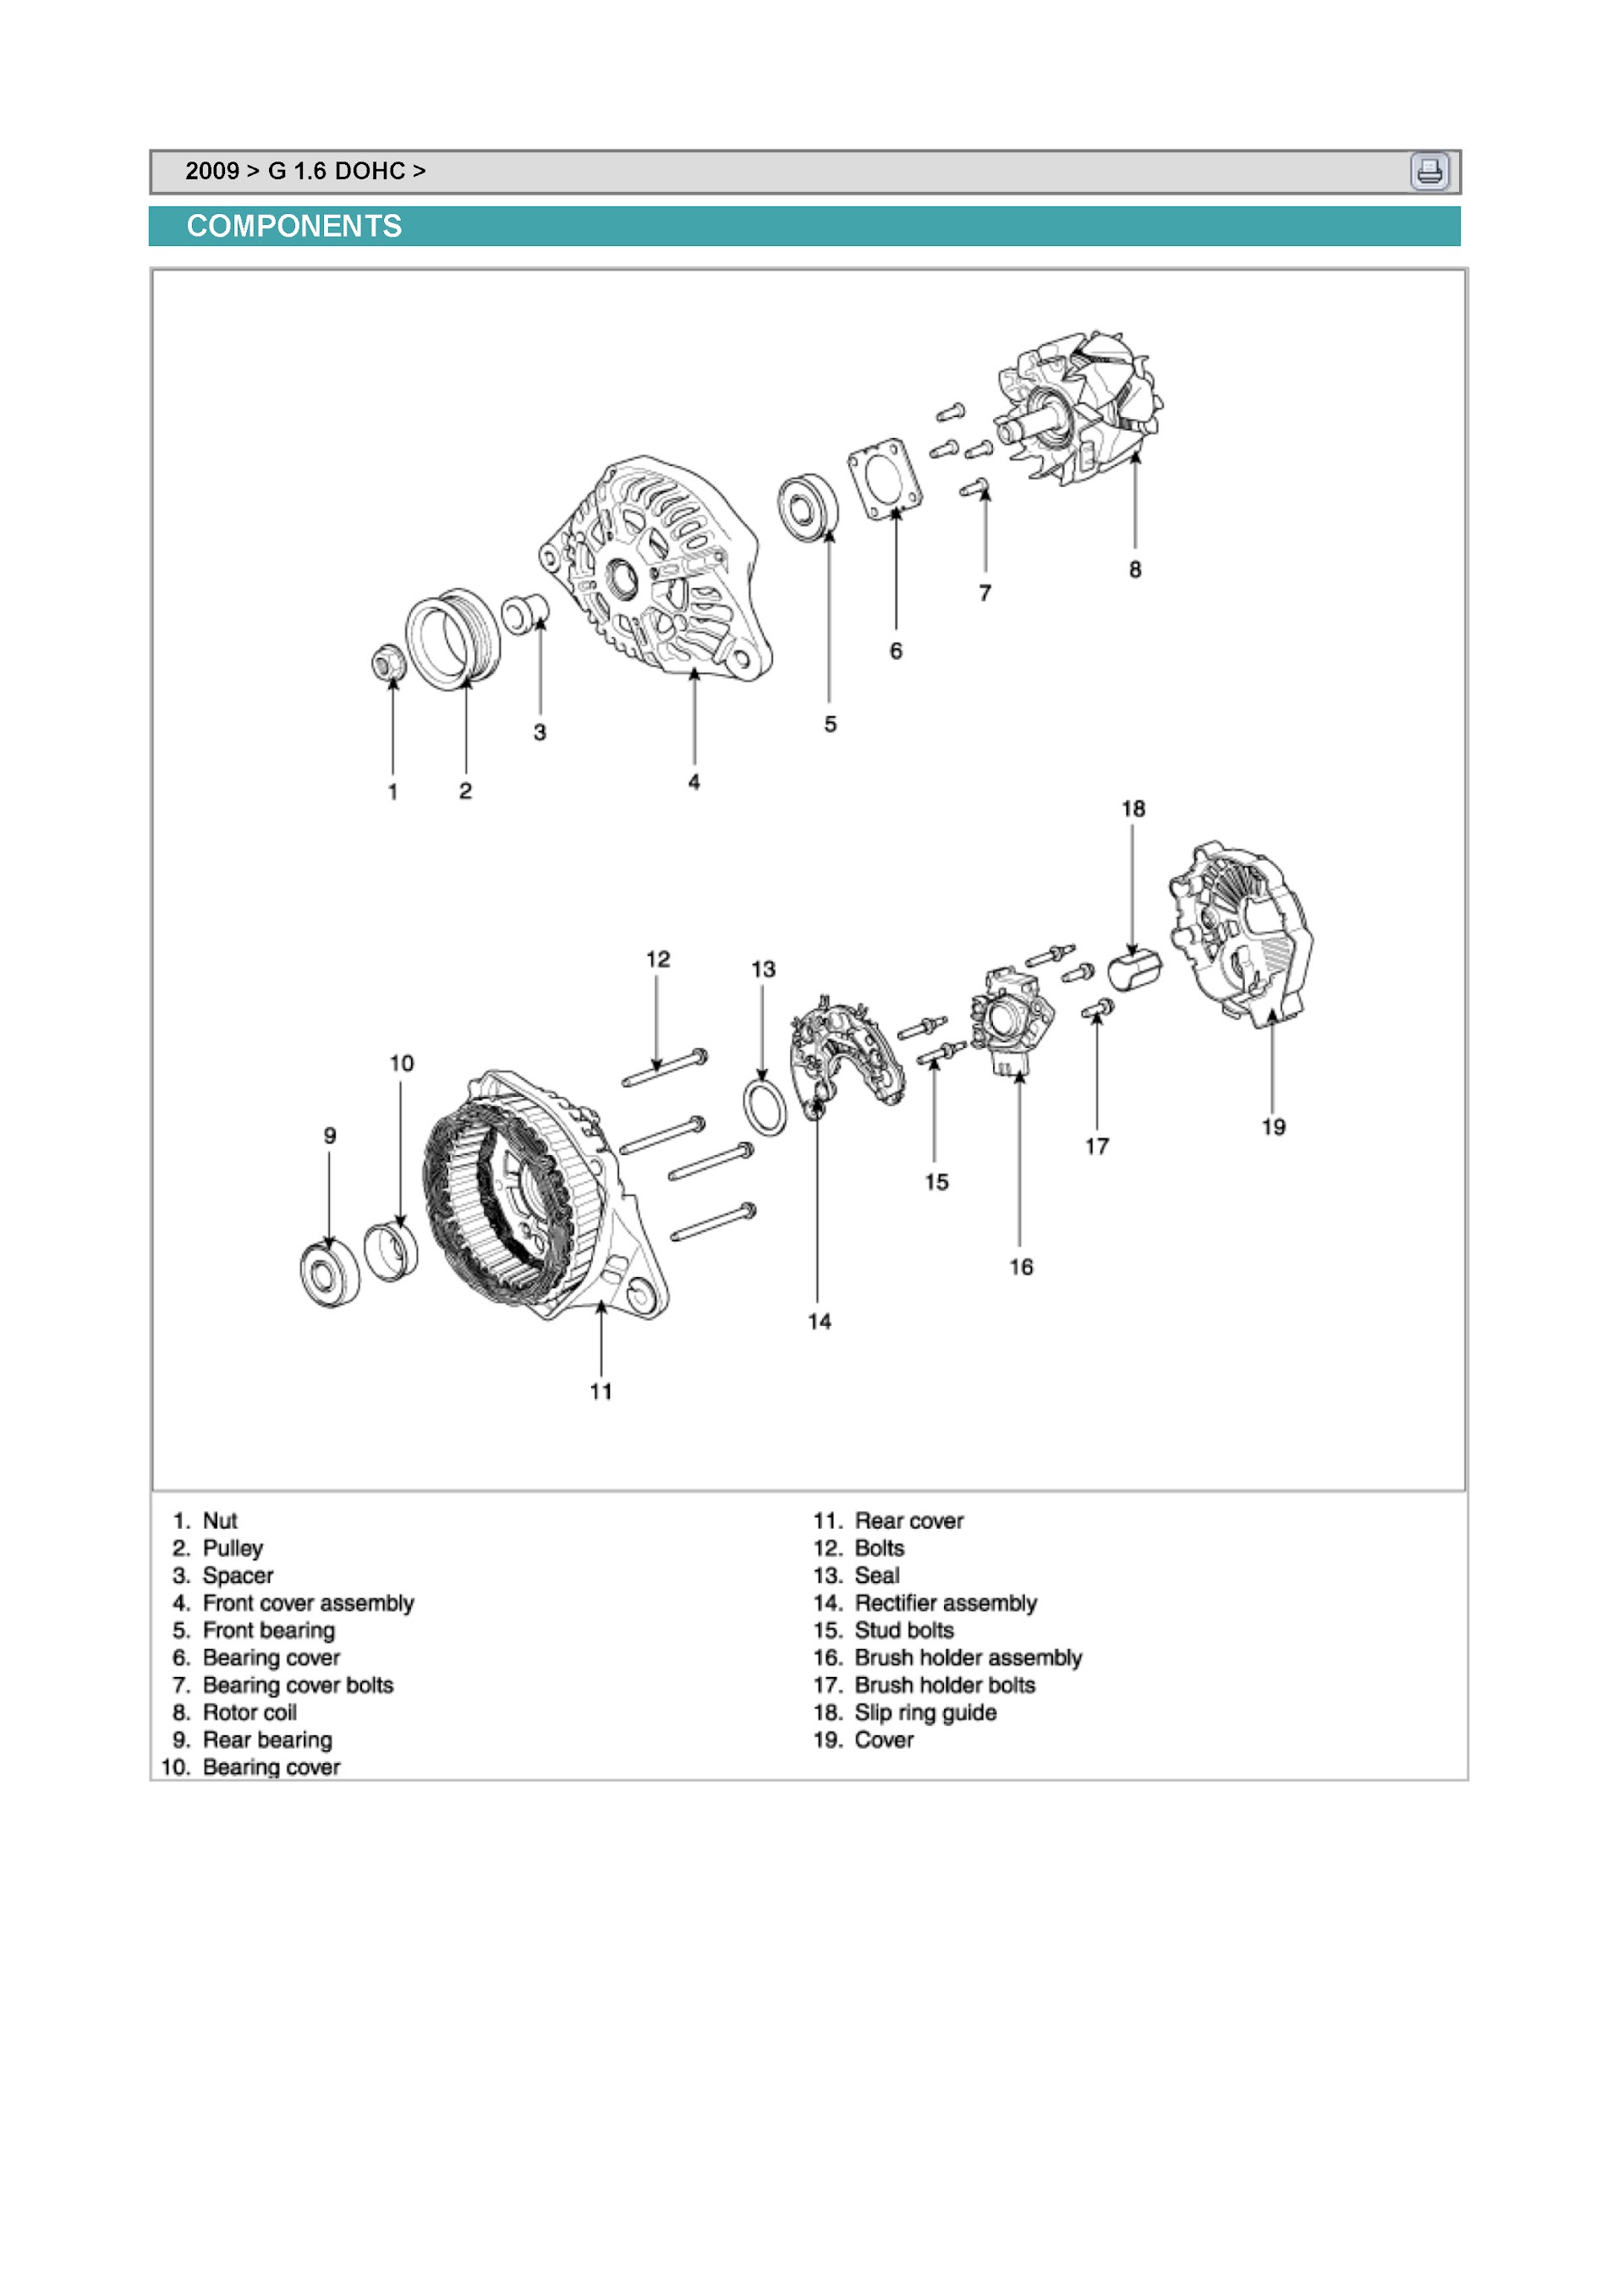 Download 2009-2010 Kia Forte Repair Manual